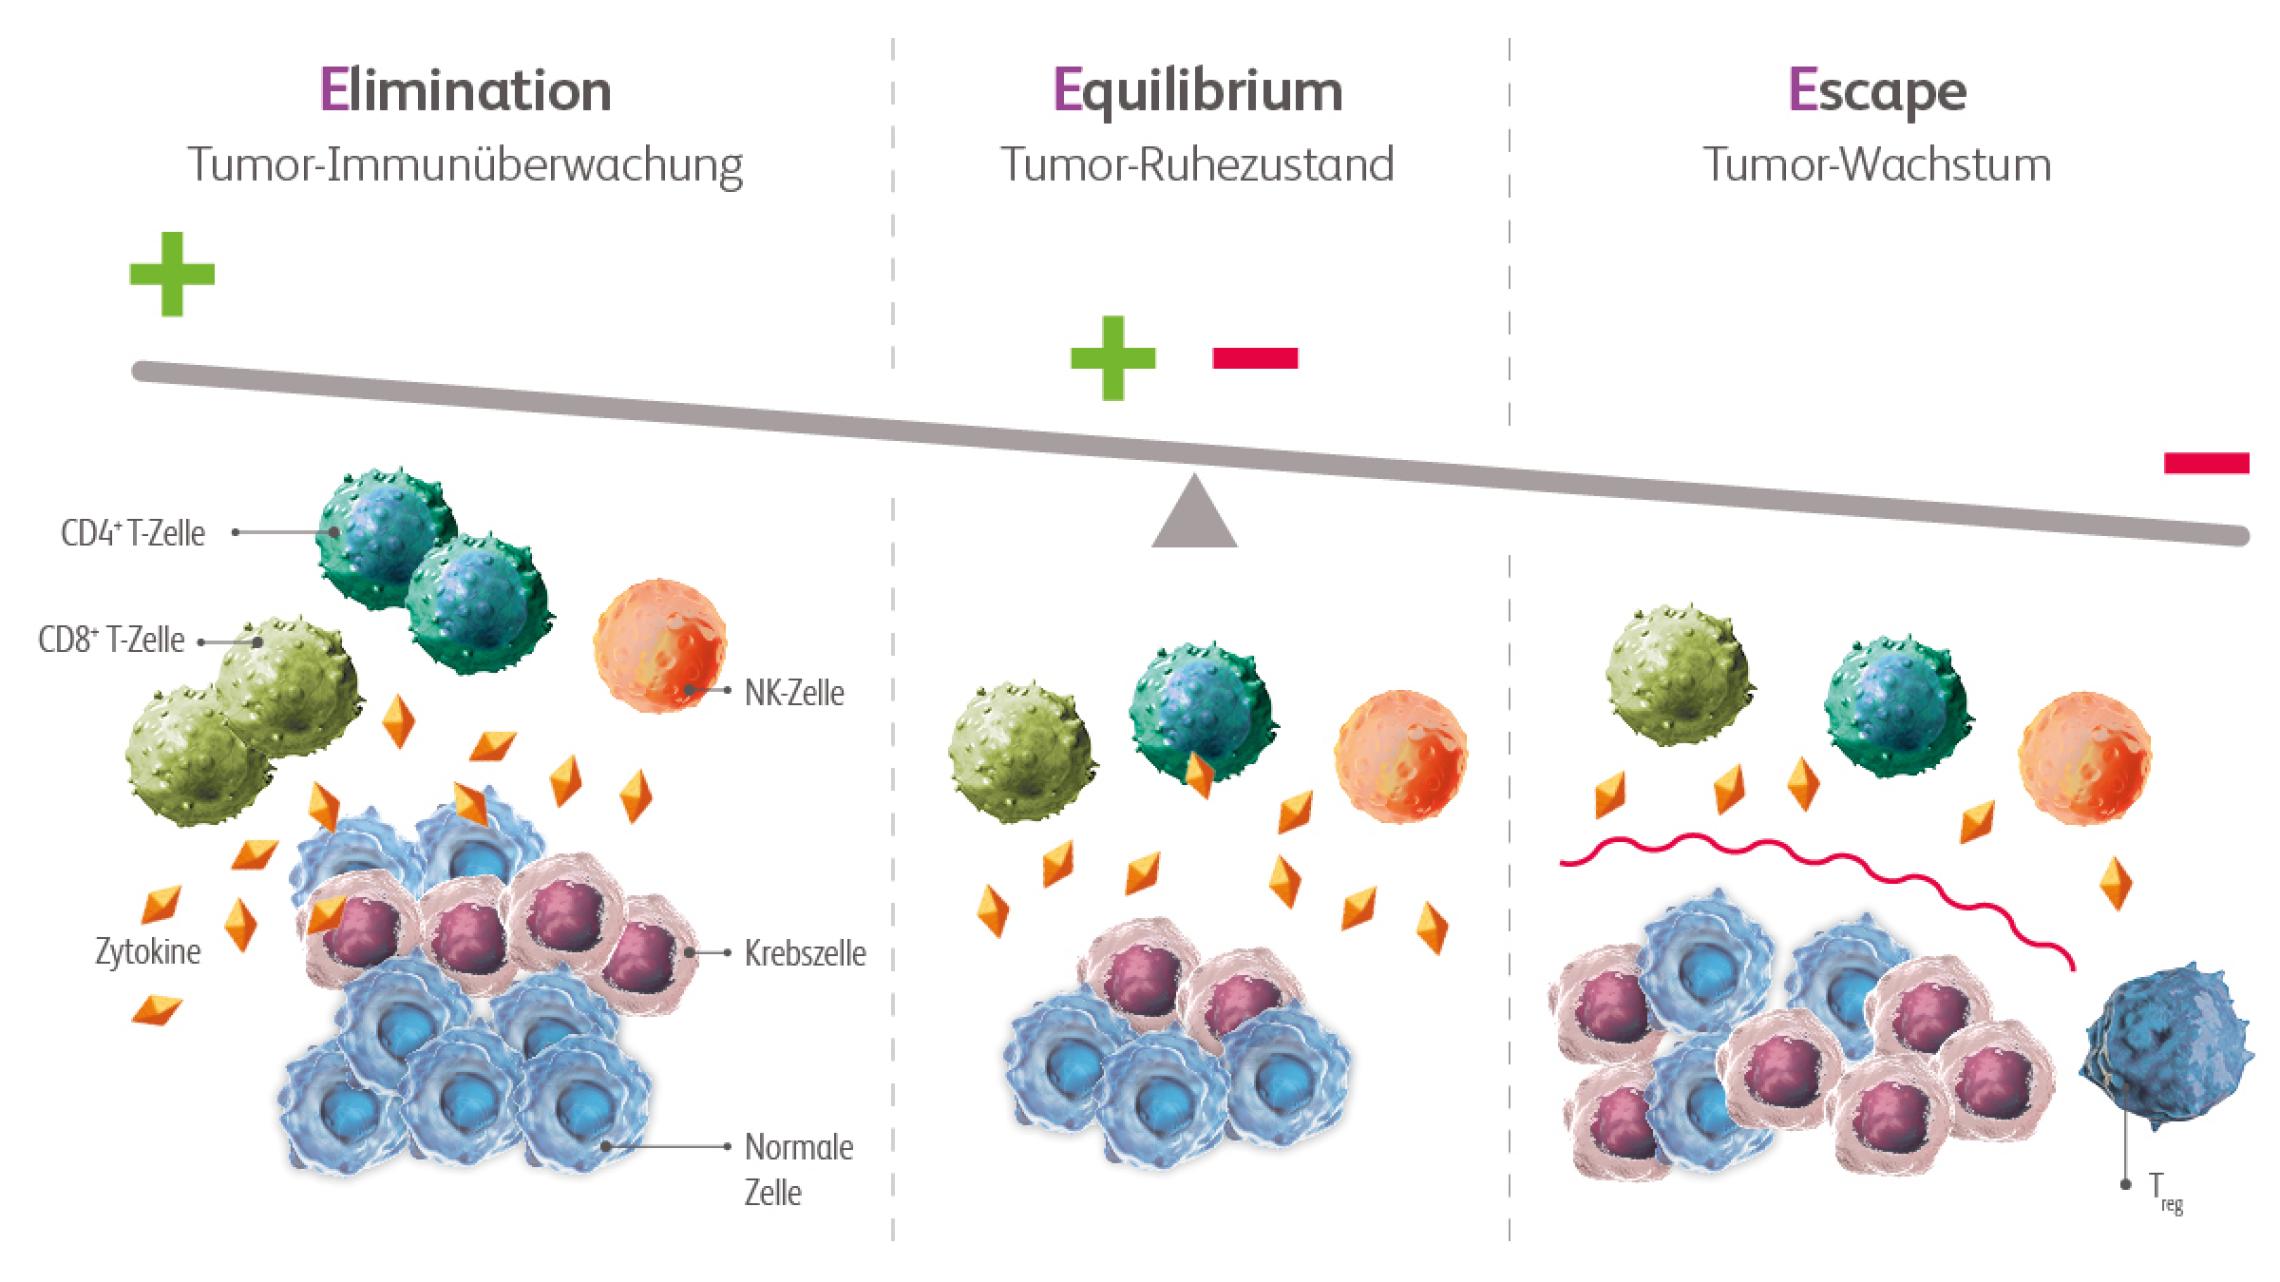 Der Prozess des Immunoediting: Tumorüberwachung und Zellelimination, Ruhezustand mit Equilibrium sowie Tumorwachstum bei Immunescape.